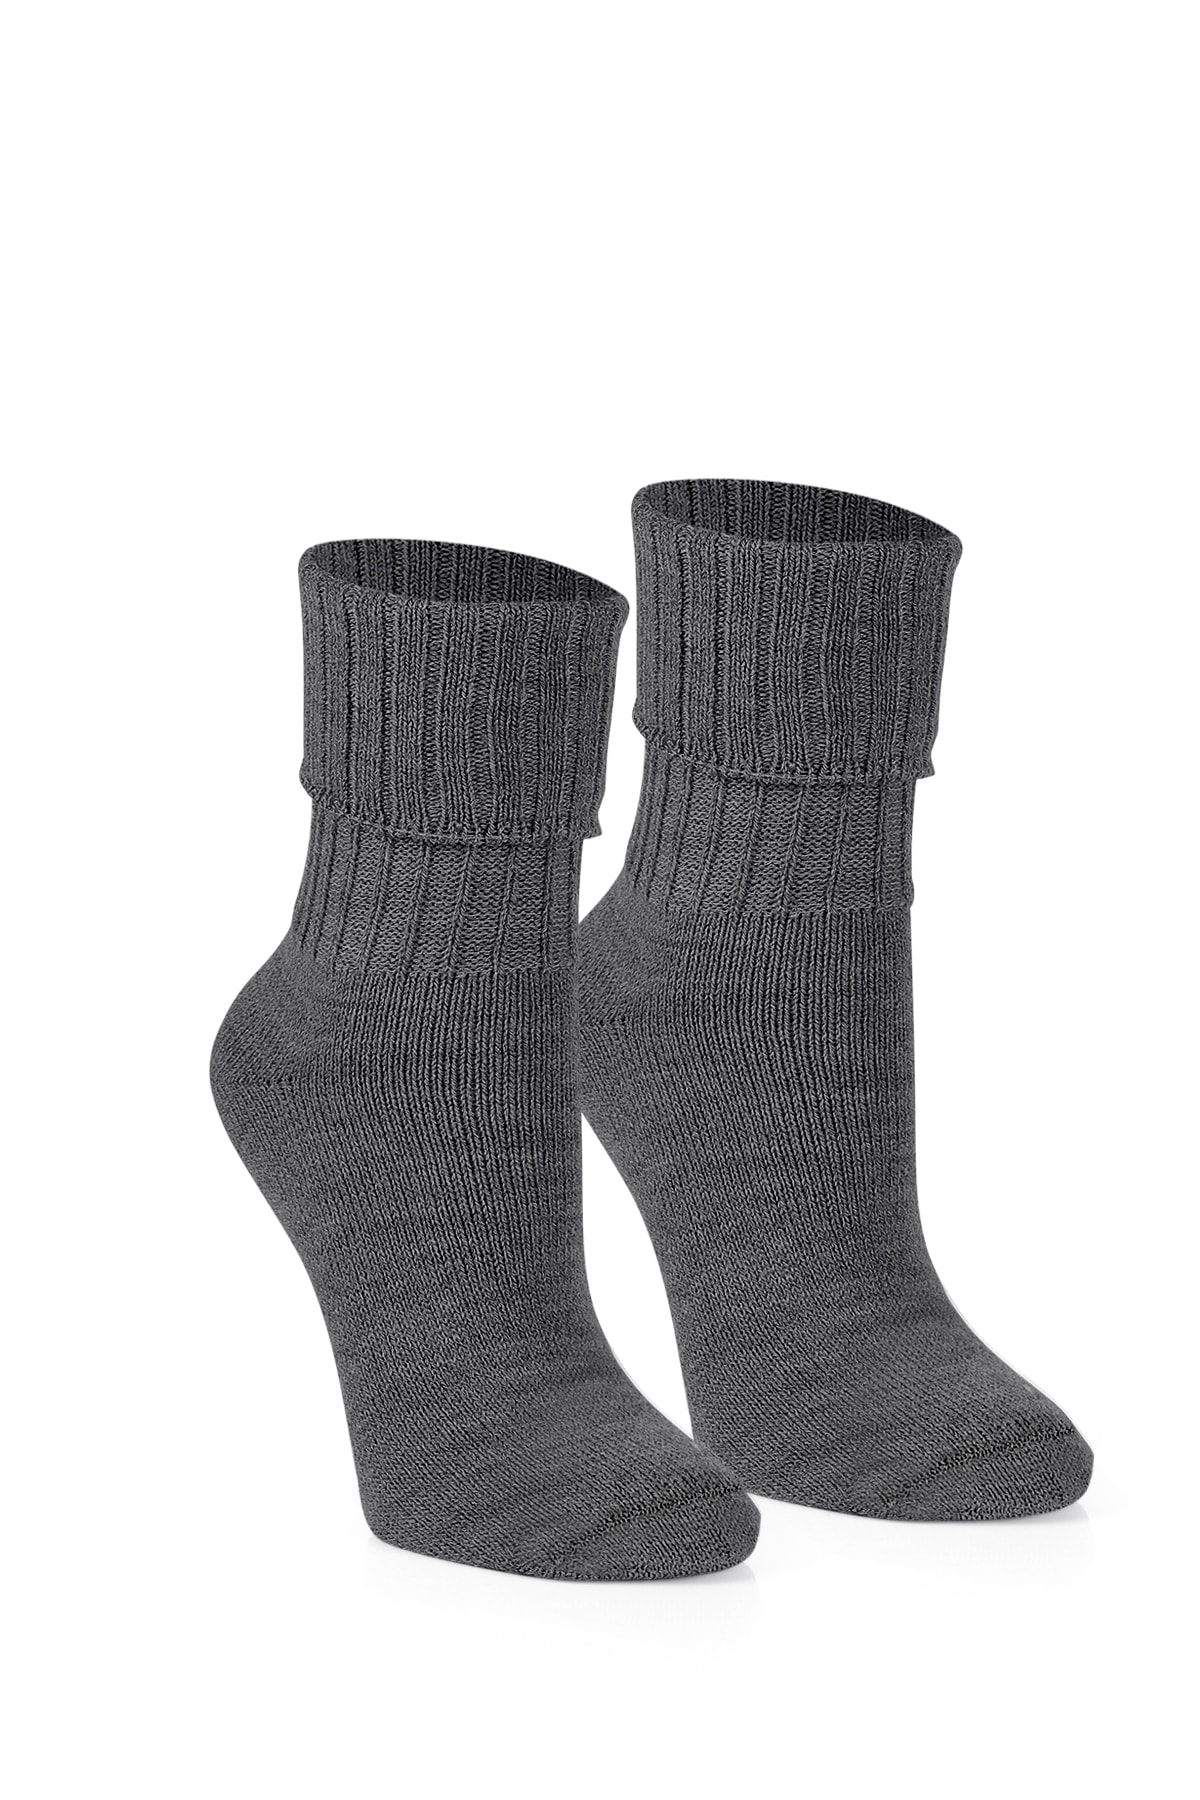 nettofit 6'lı Kışlık Kadın Yün 'lü Uyku Çorabı Soft Touch ZN8602